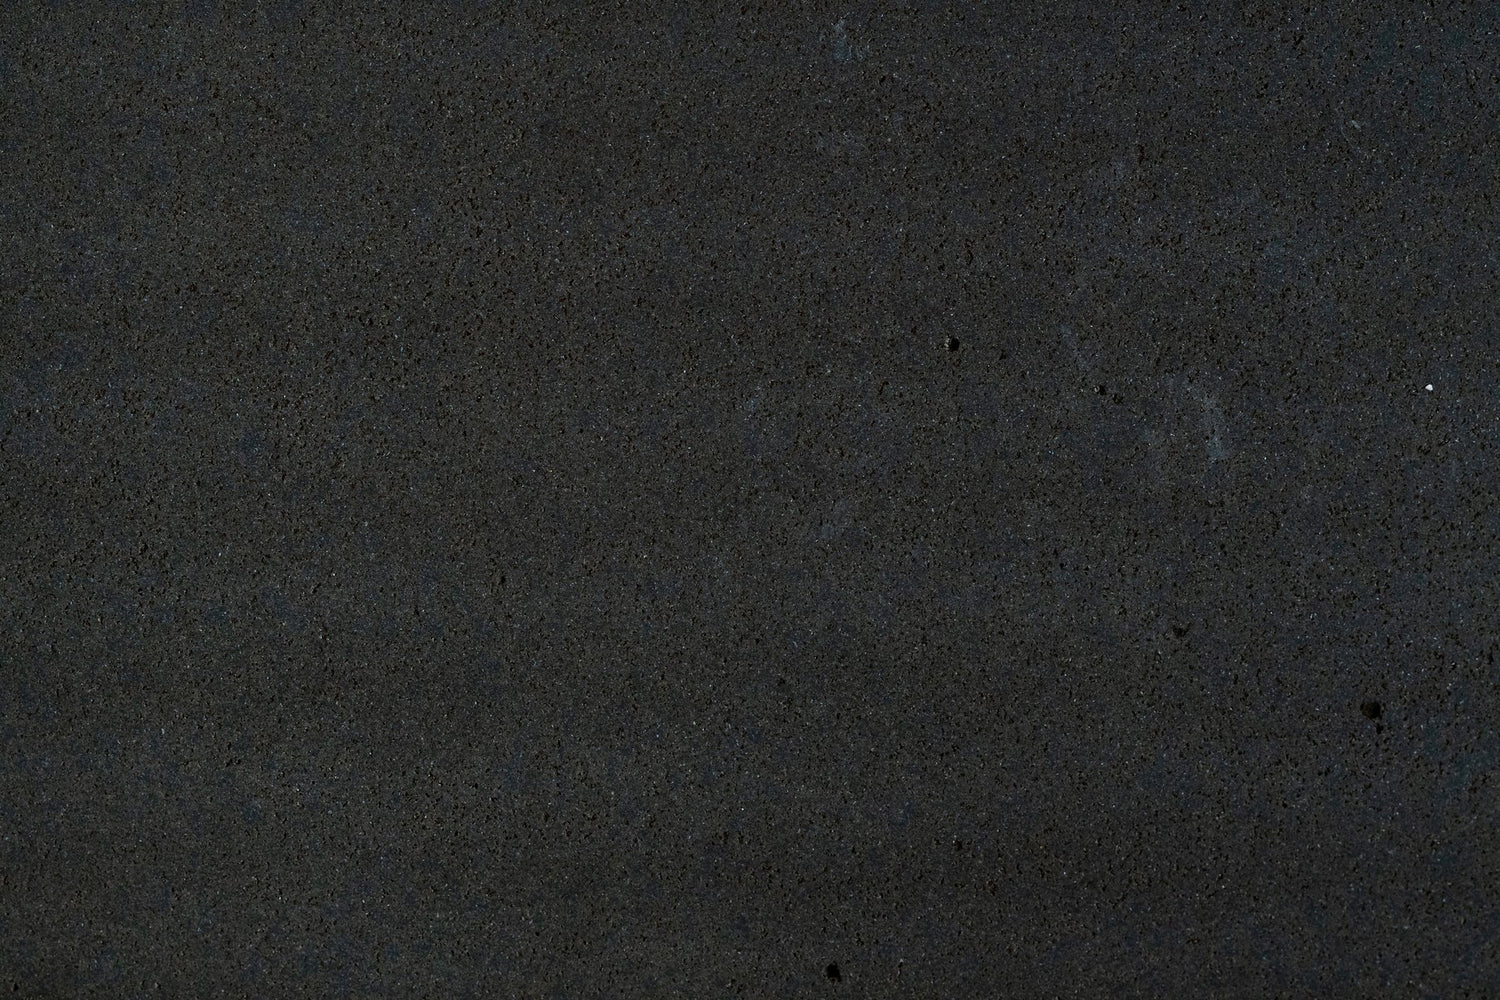 Full Tile Sample - Basalt Dark Basalt Tile - 4" x 12" x 3/8" Honed